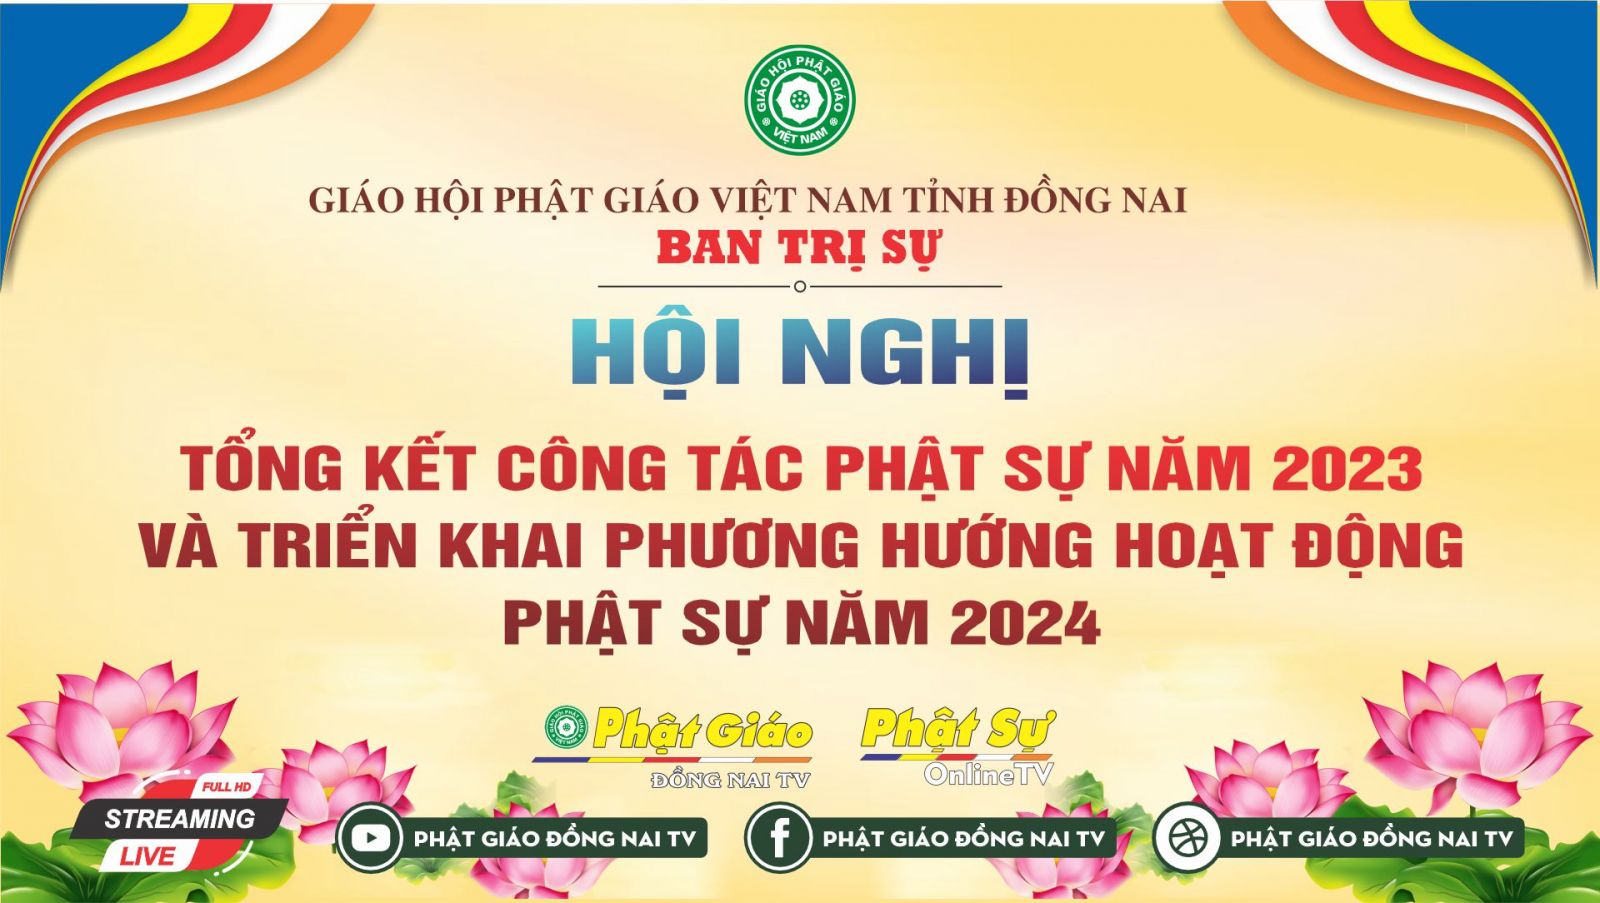 Trực tiếp: Trang nghiêm Hội nghị tổng kết công tác Phật sư năm 2023 của Ban Trị sự GHPGVN tỉnh Đồng Nai